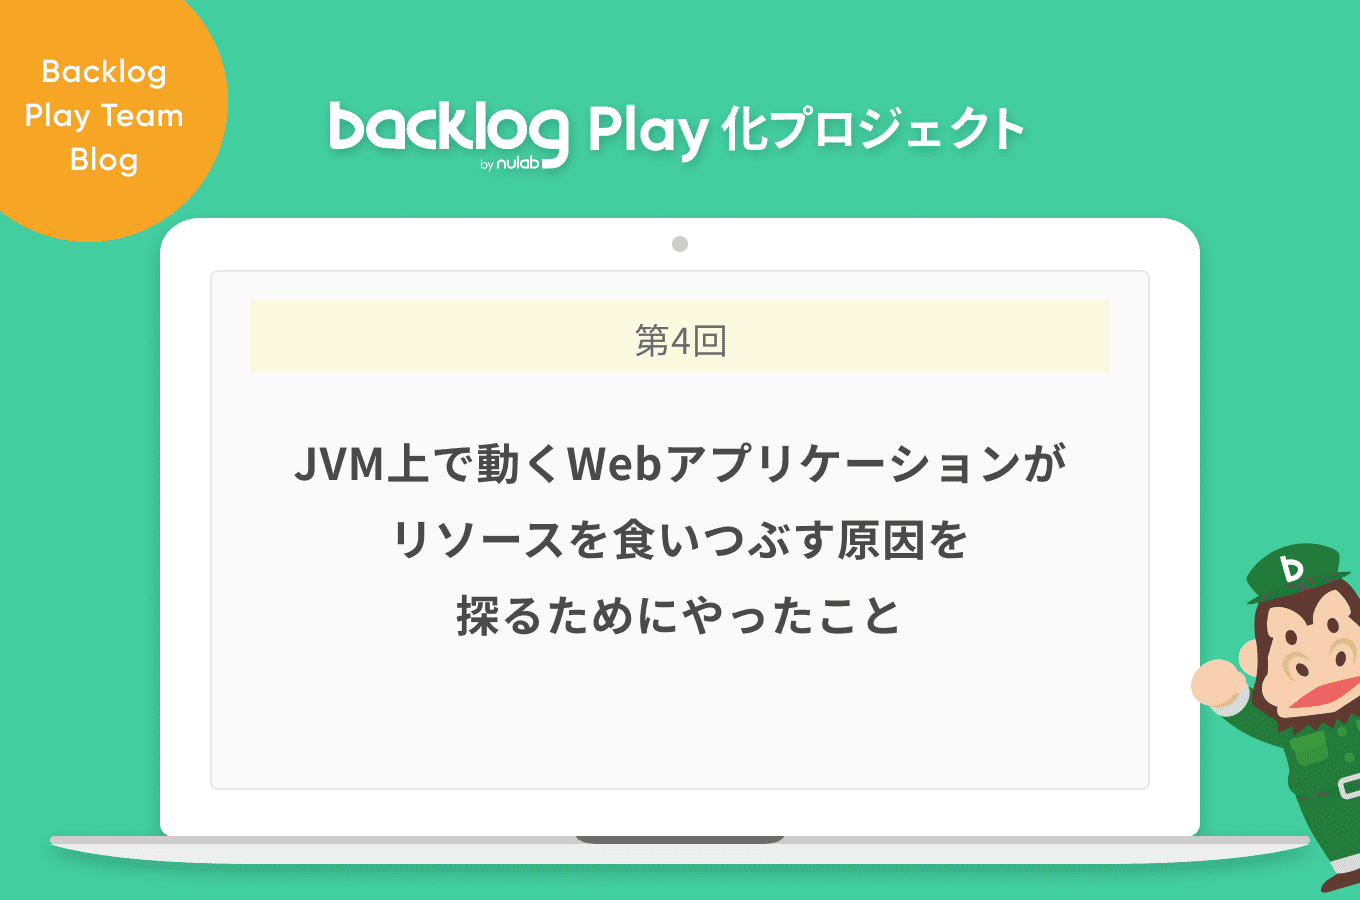 Jvm上で動くwebアプリケーションがリソースを食いつぶす原因を探るためにやったこと Backlog Play化プロジェクト Backlogブログ